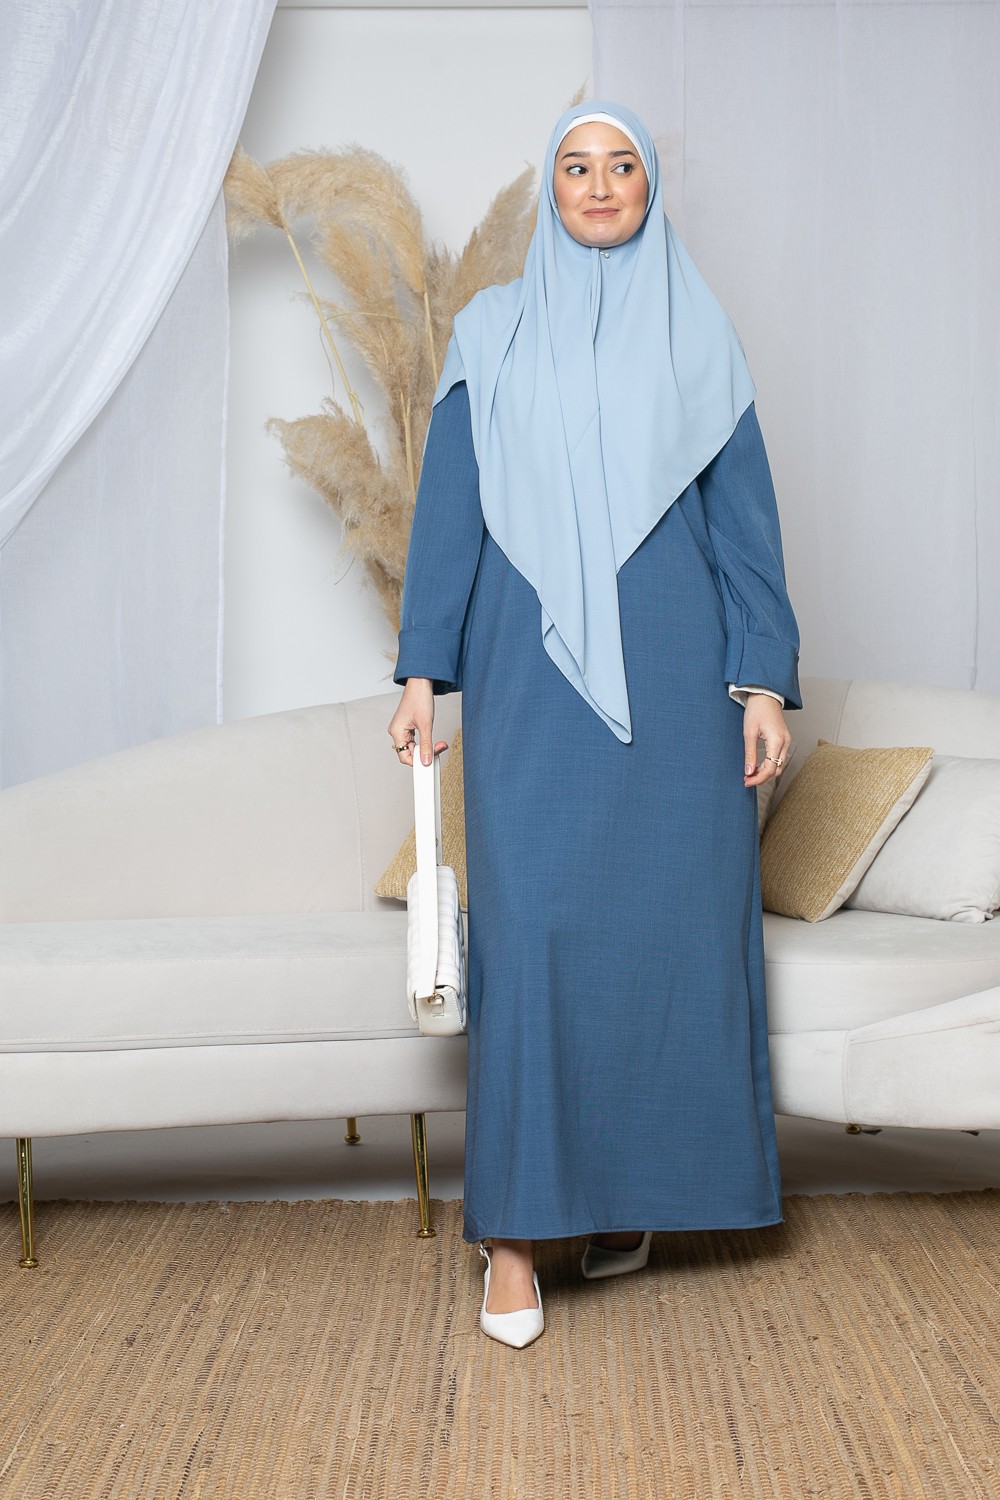 Robe longue habillée pour femme musulmane. Boutique musulmane pas cher.